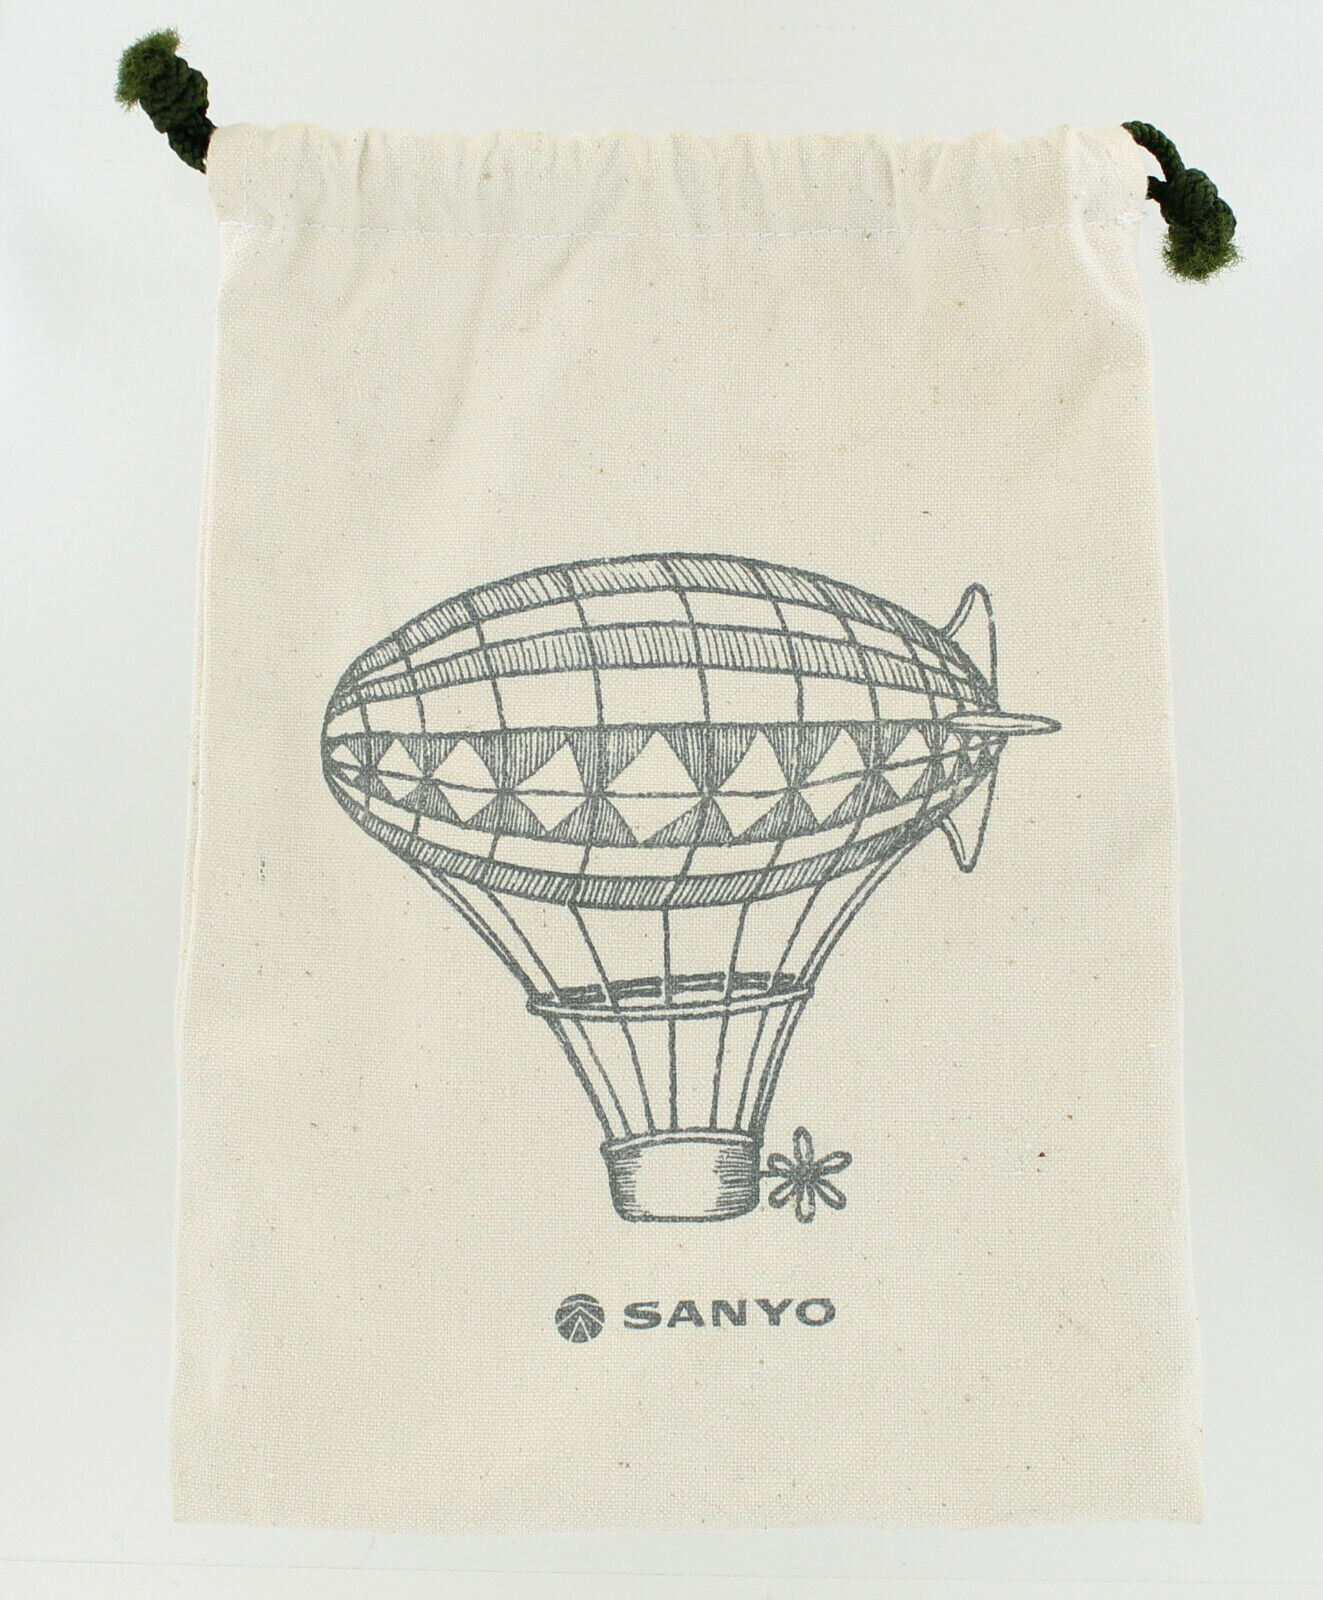 Sanyo Drawstring Bag with Blimp - Rare